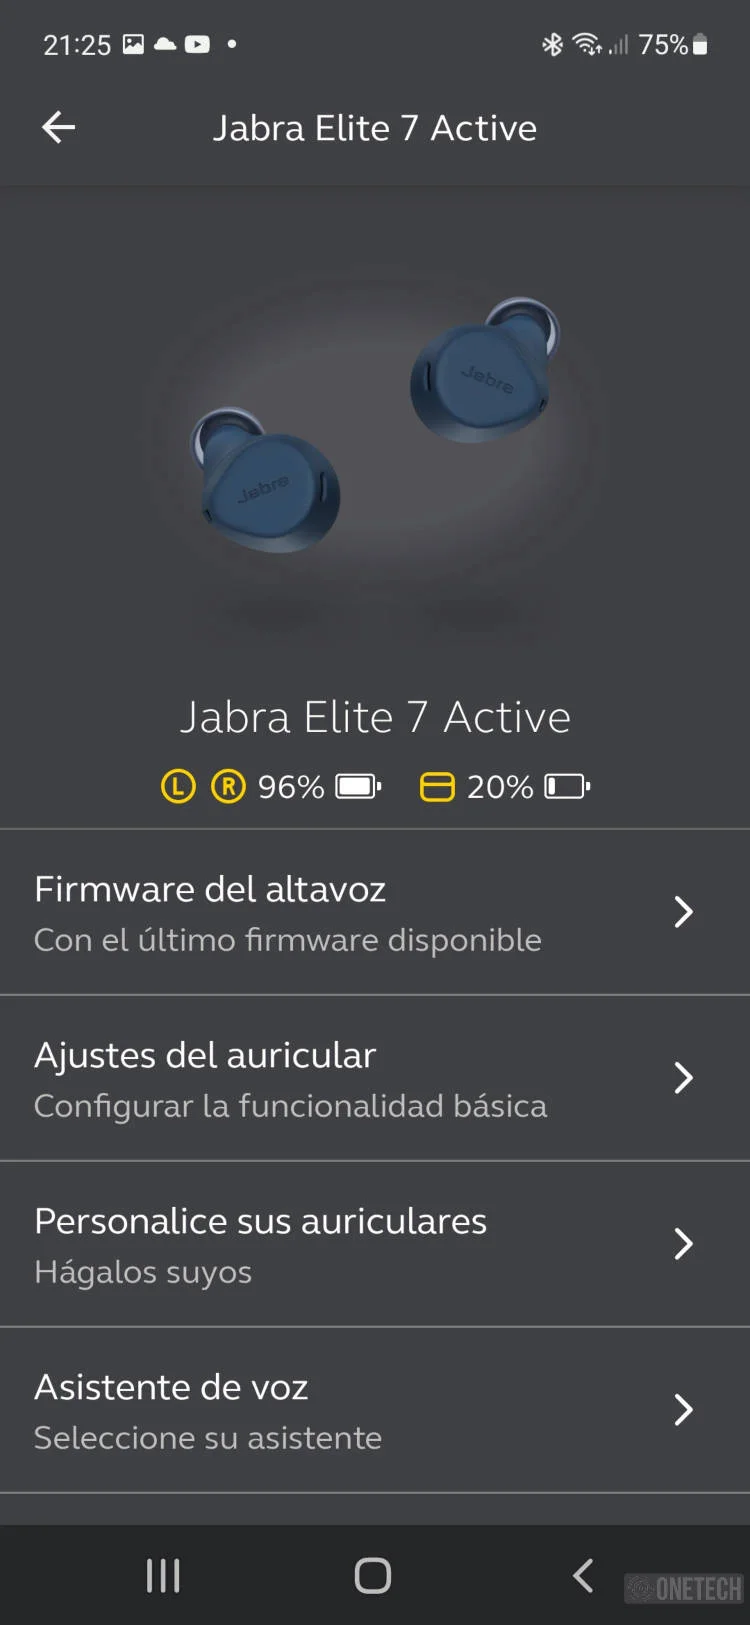 Jabra Elite 7 Active, la gama alta de auriculares "sport" con ANC y carga inalámbrica - Análisis 8